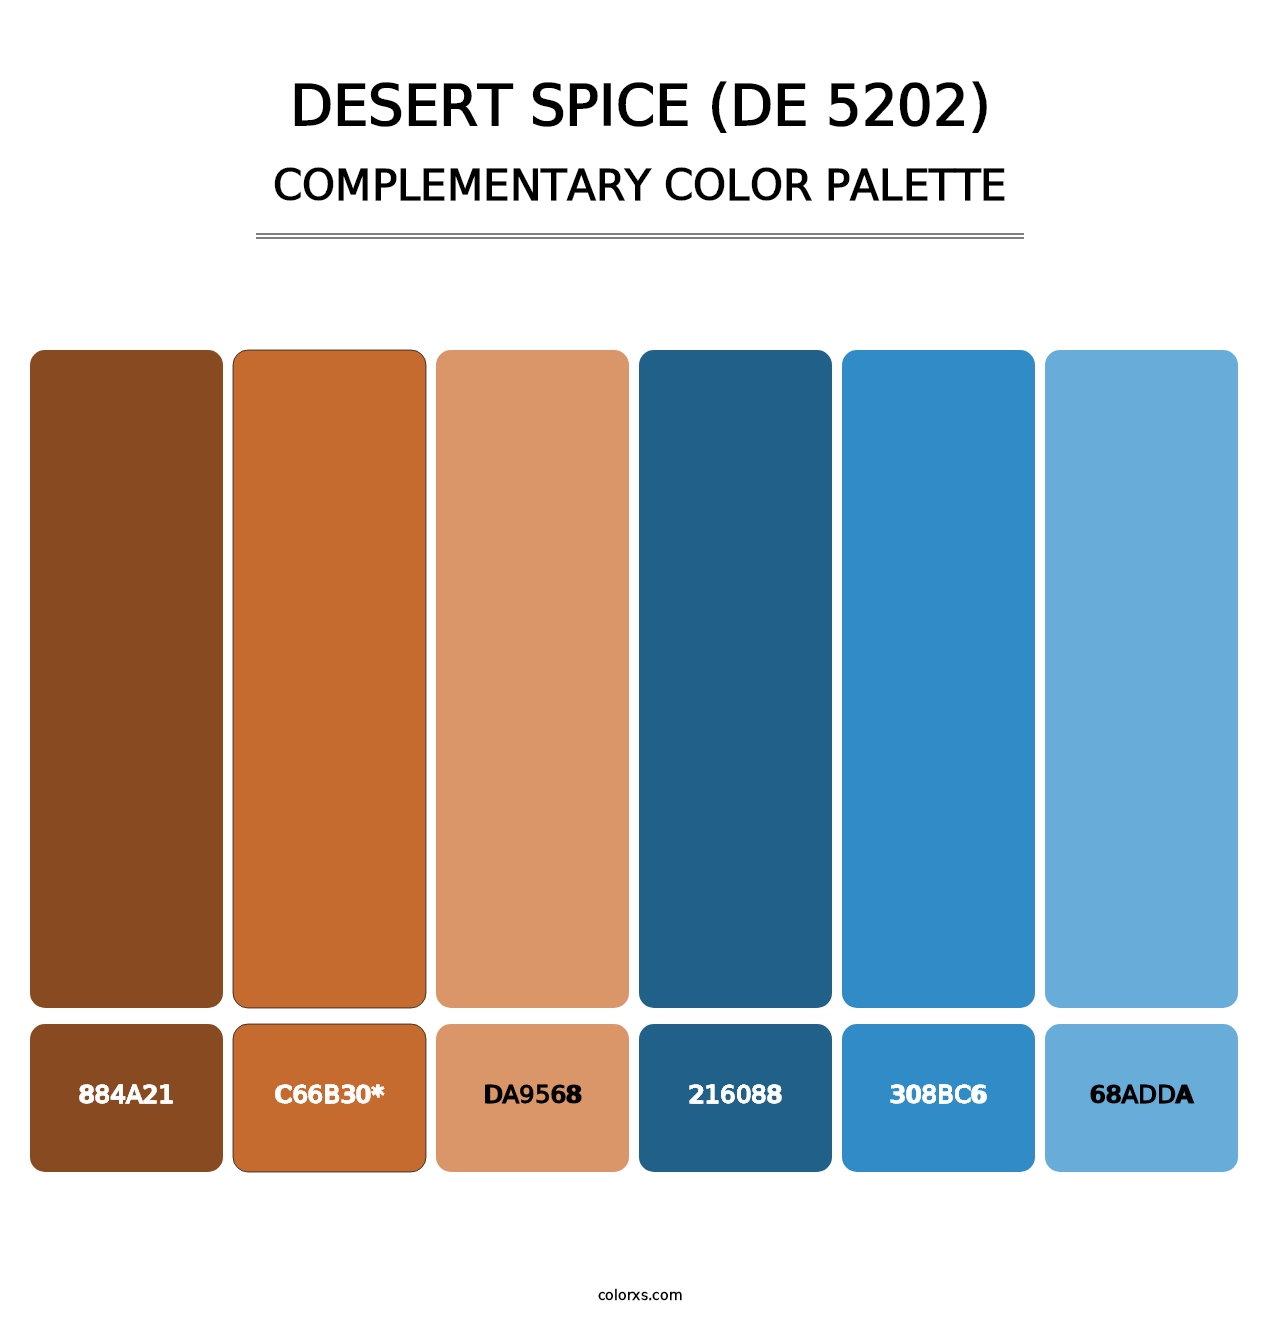 Desert Spice (DE 5202) - Complementary Color Palette